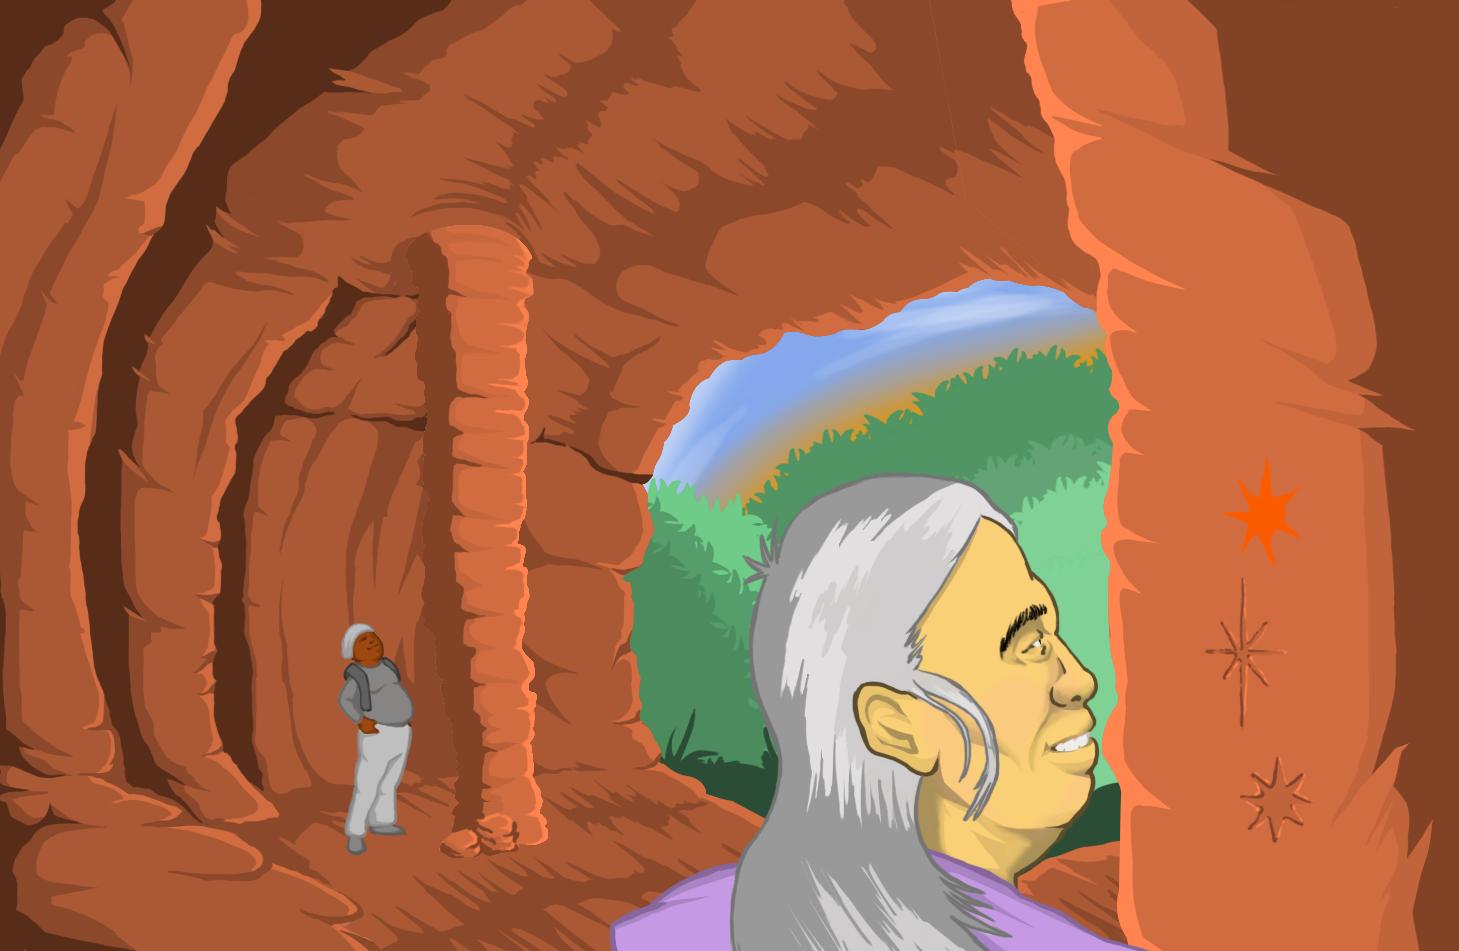 Descrição da imagem: Ilustração horizontal e colorida de uma mulher de cabelos grisalhos que observa desenhos em uma parede de caverna. Ela tem cabelos lisos e grisalhos, pele branca, está de perfil e em primeiro plano. Ao fundo, adolescente de pele negra está de pé e olha para o teto. Ao fundo, a entrada da caverna com uma paisagem verde.